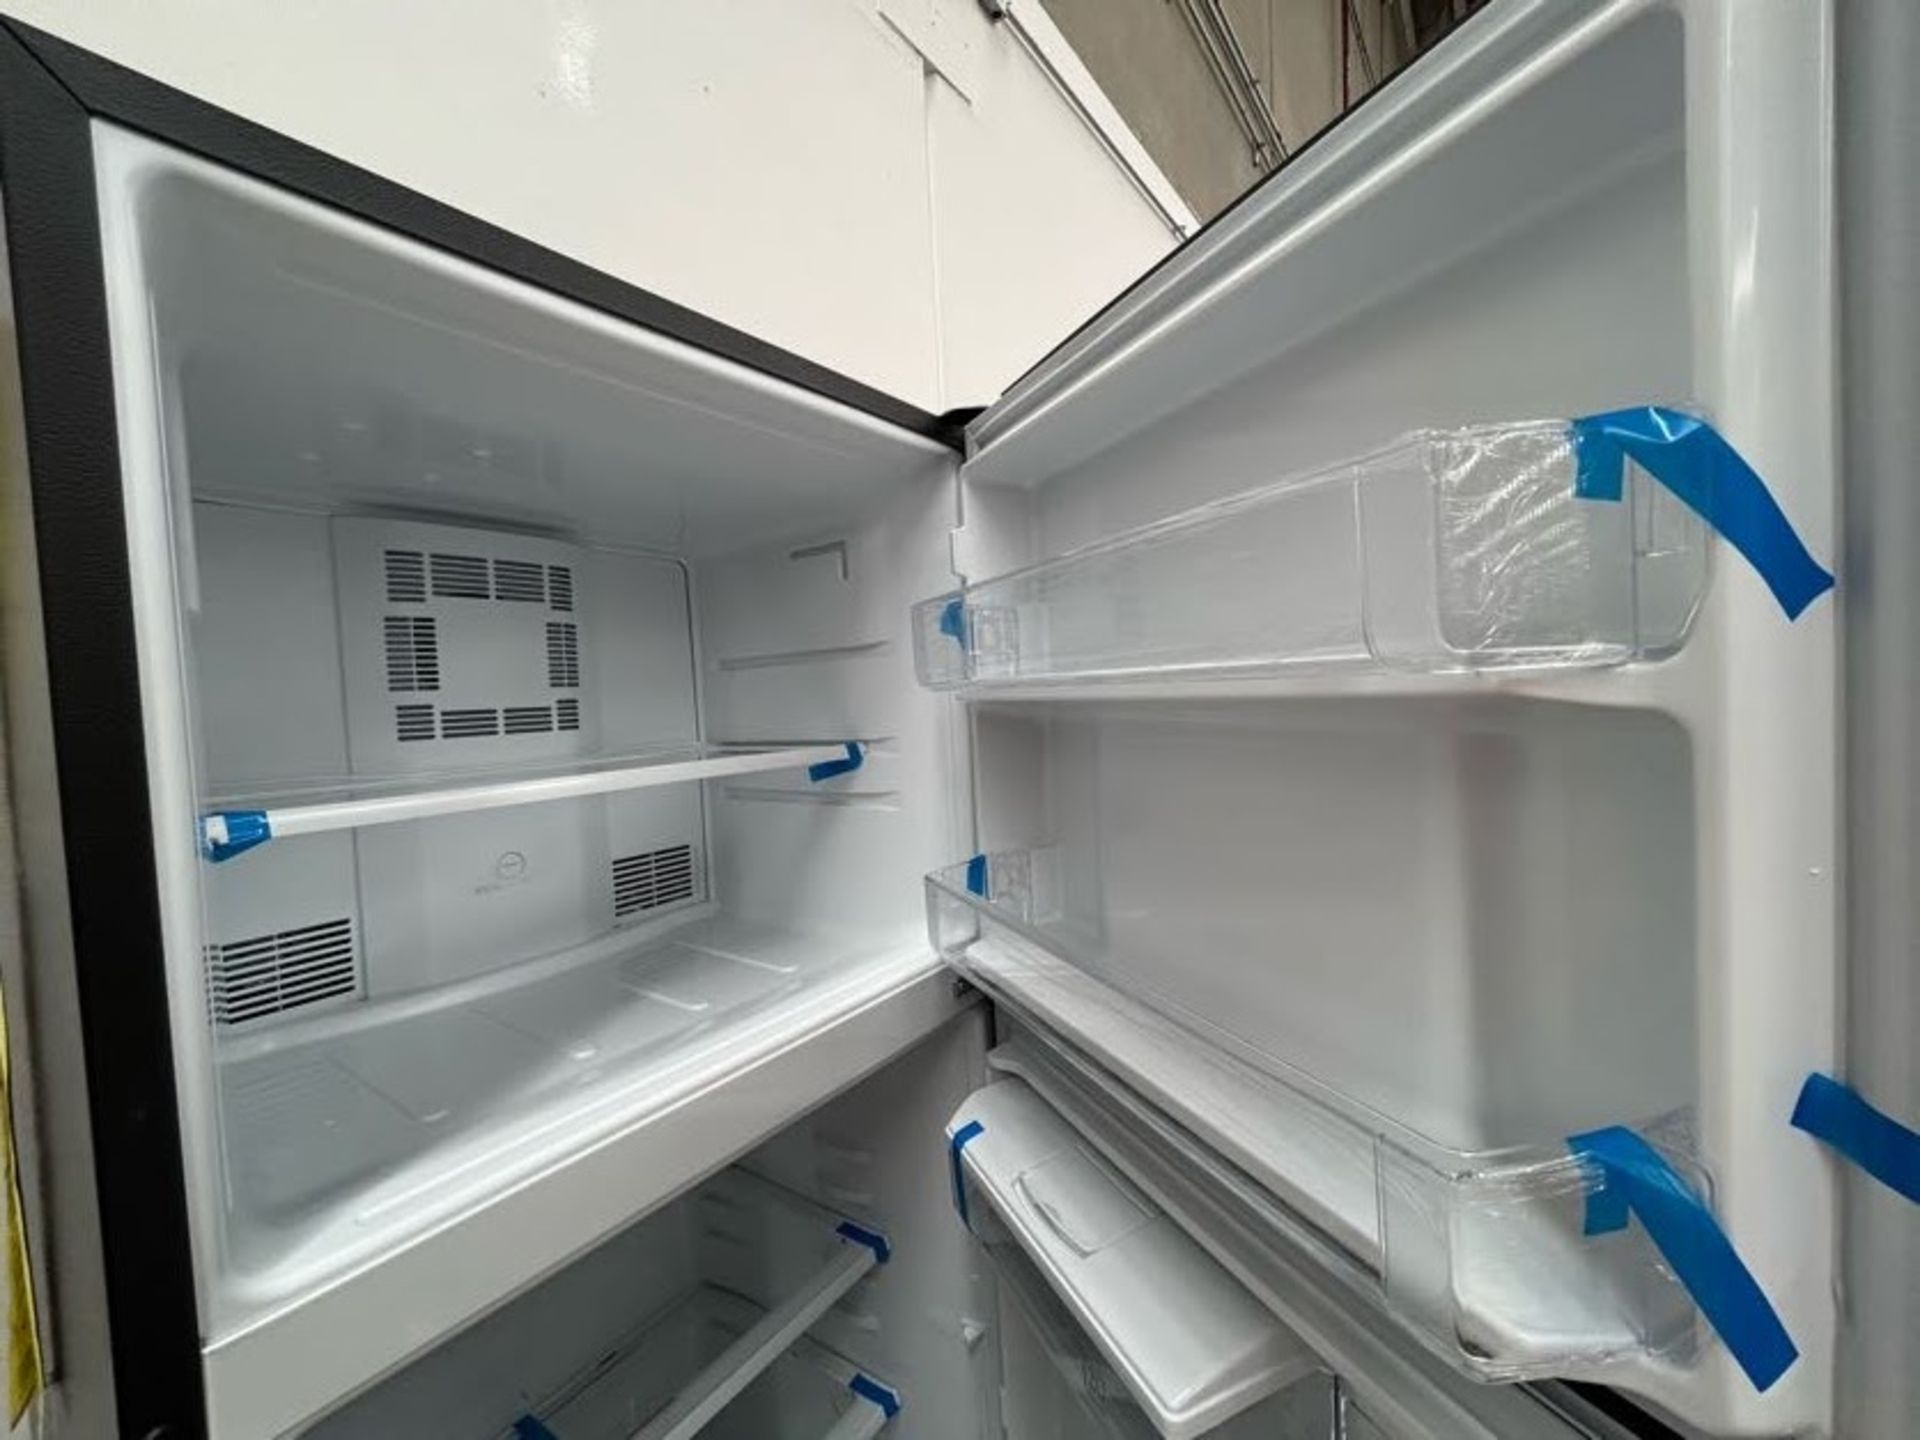 Lote de 2 Refrigeradores contiene: 1 Refrigerador con dispensador de agua Marca MABE, Modelo RME360 - Image 6 of 10